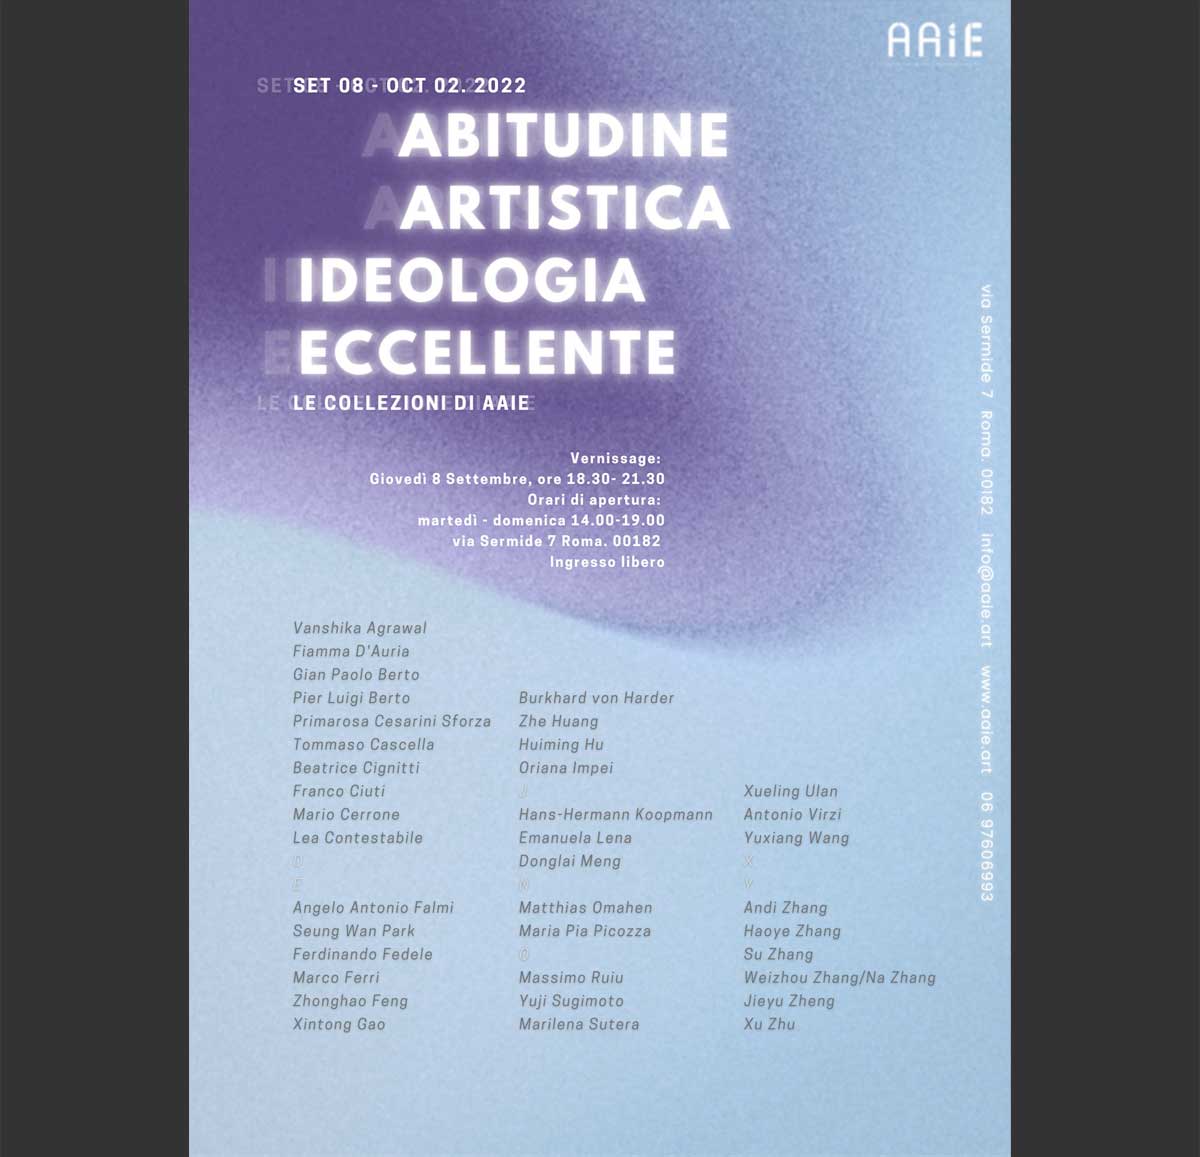 Burkhard von Harder | AAIE exhibition - ABITUDINE ARTISTICA - IDEOLOGIA ECCELLENTE